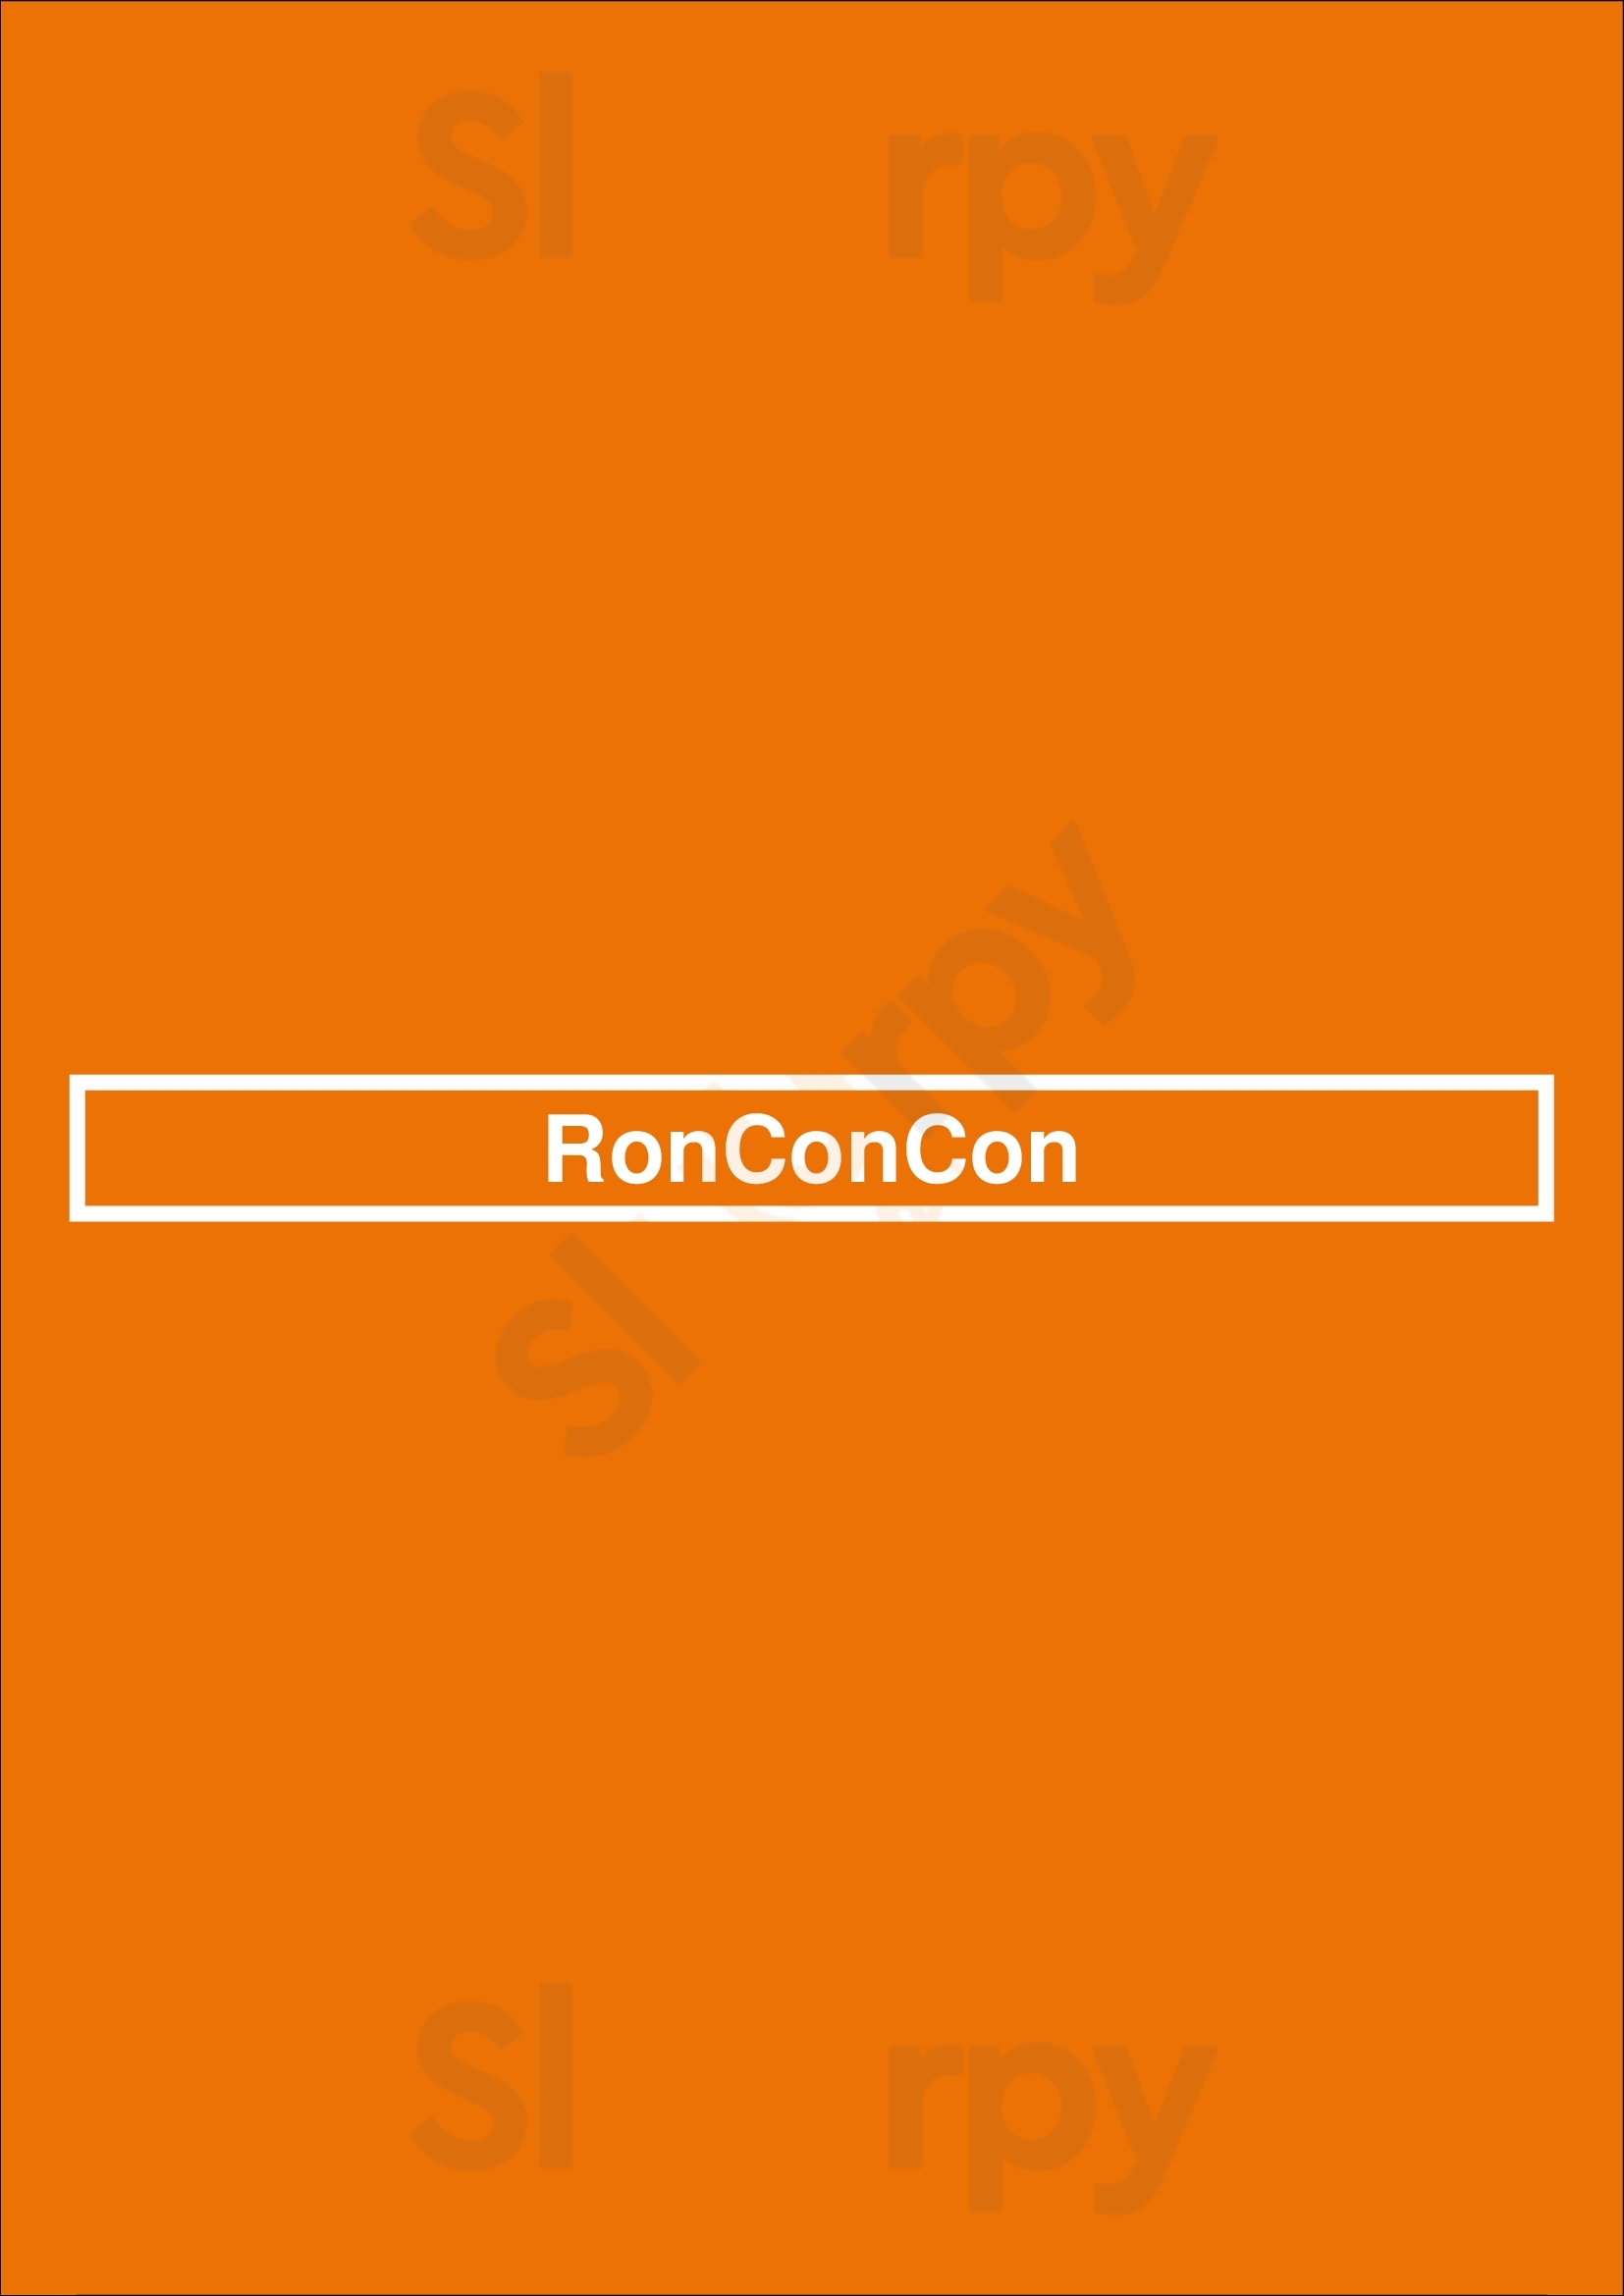 Ronconcon Buenos Aires Menu - 1